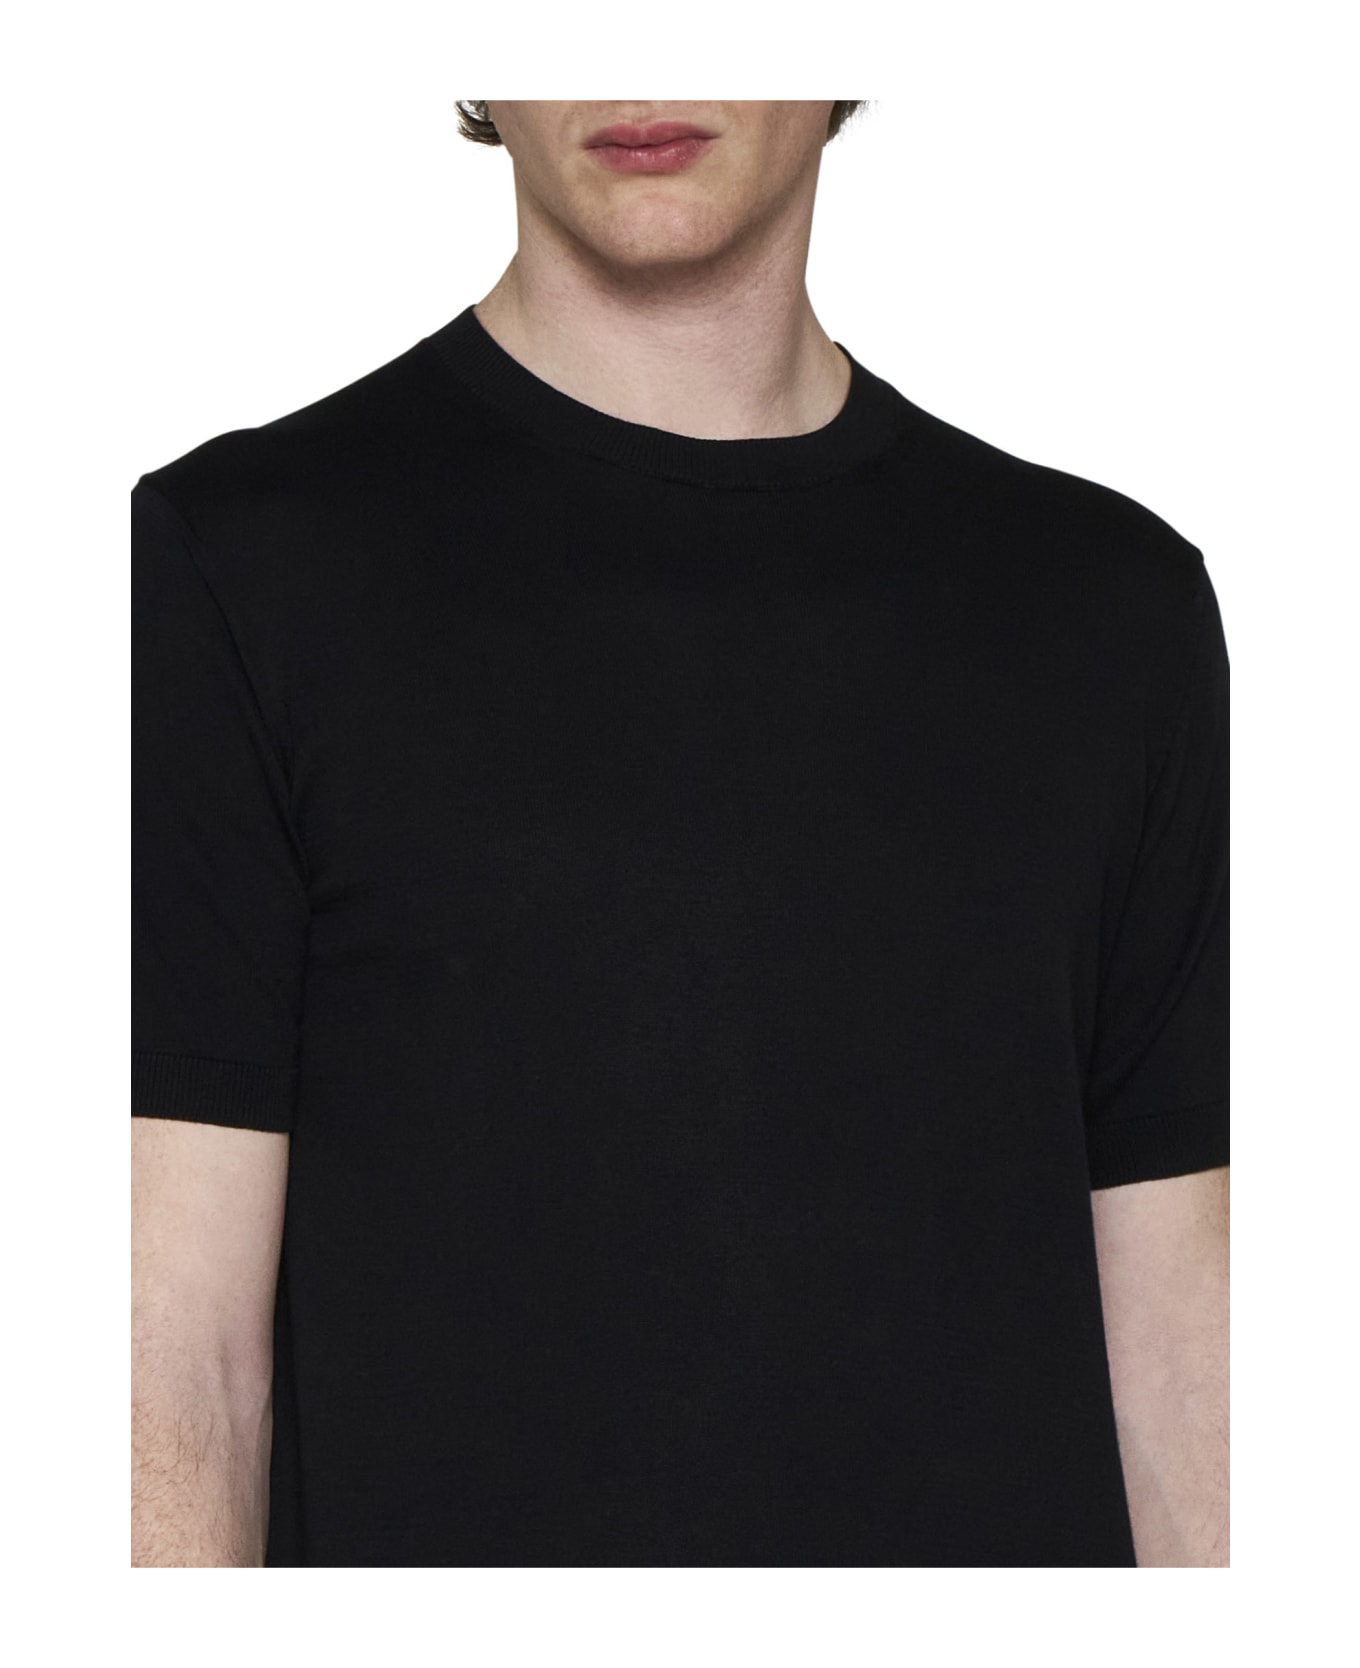 Tagliatore T-shirt - Black